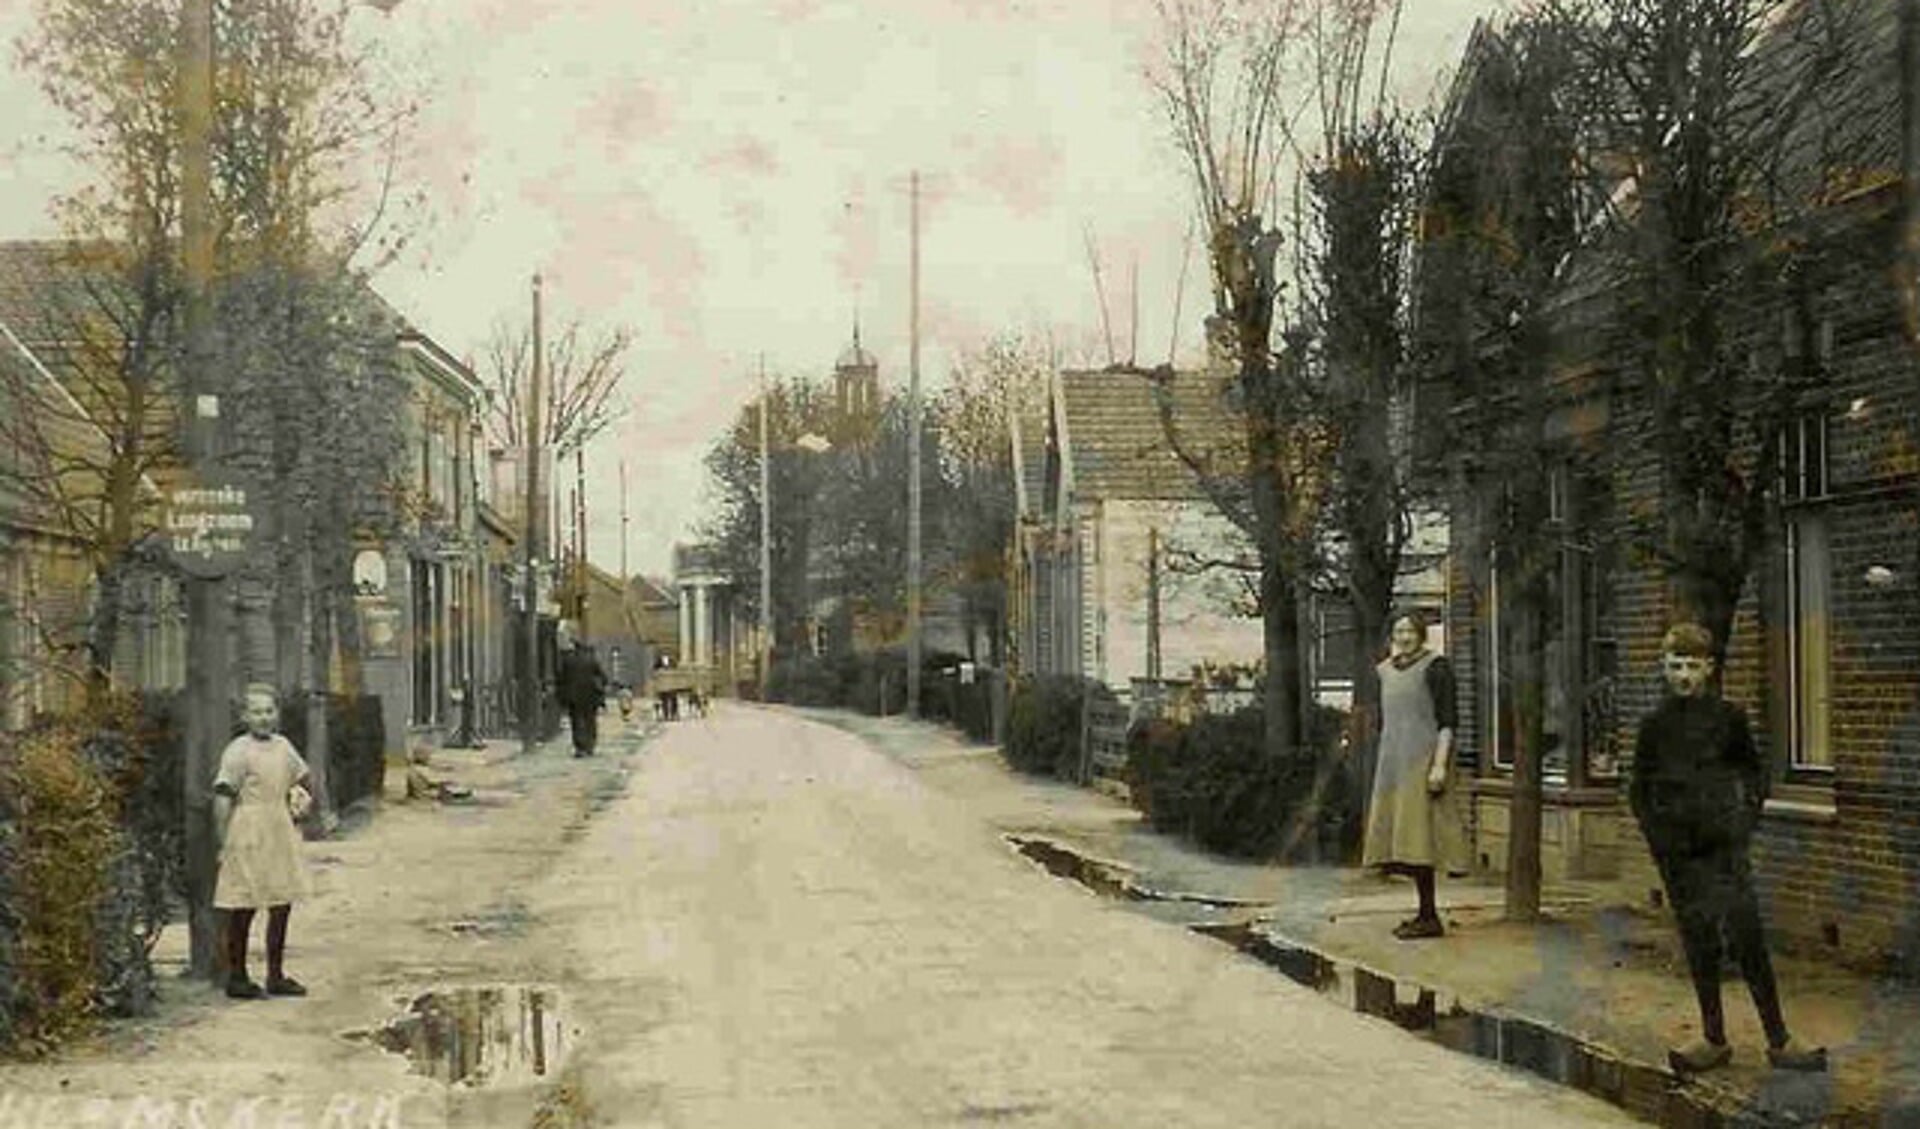 Ansichtkaart uit 1925. De Gerrit van Assendelftstraat voorheen Grintweg of Puinweg geheten. 